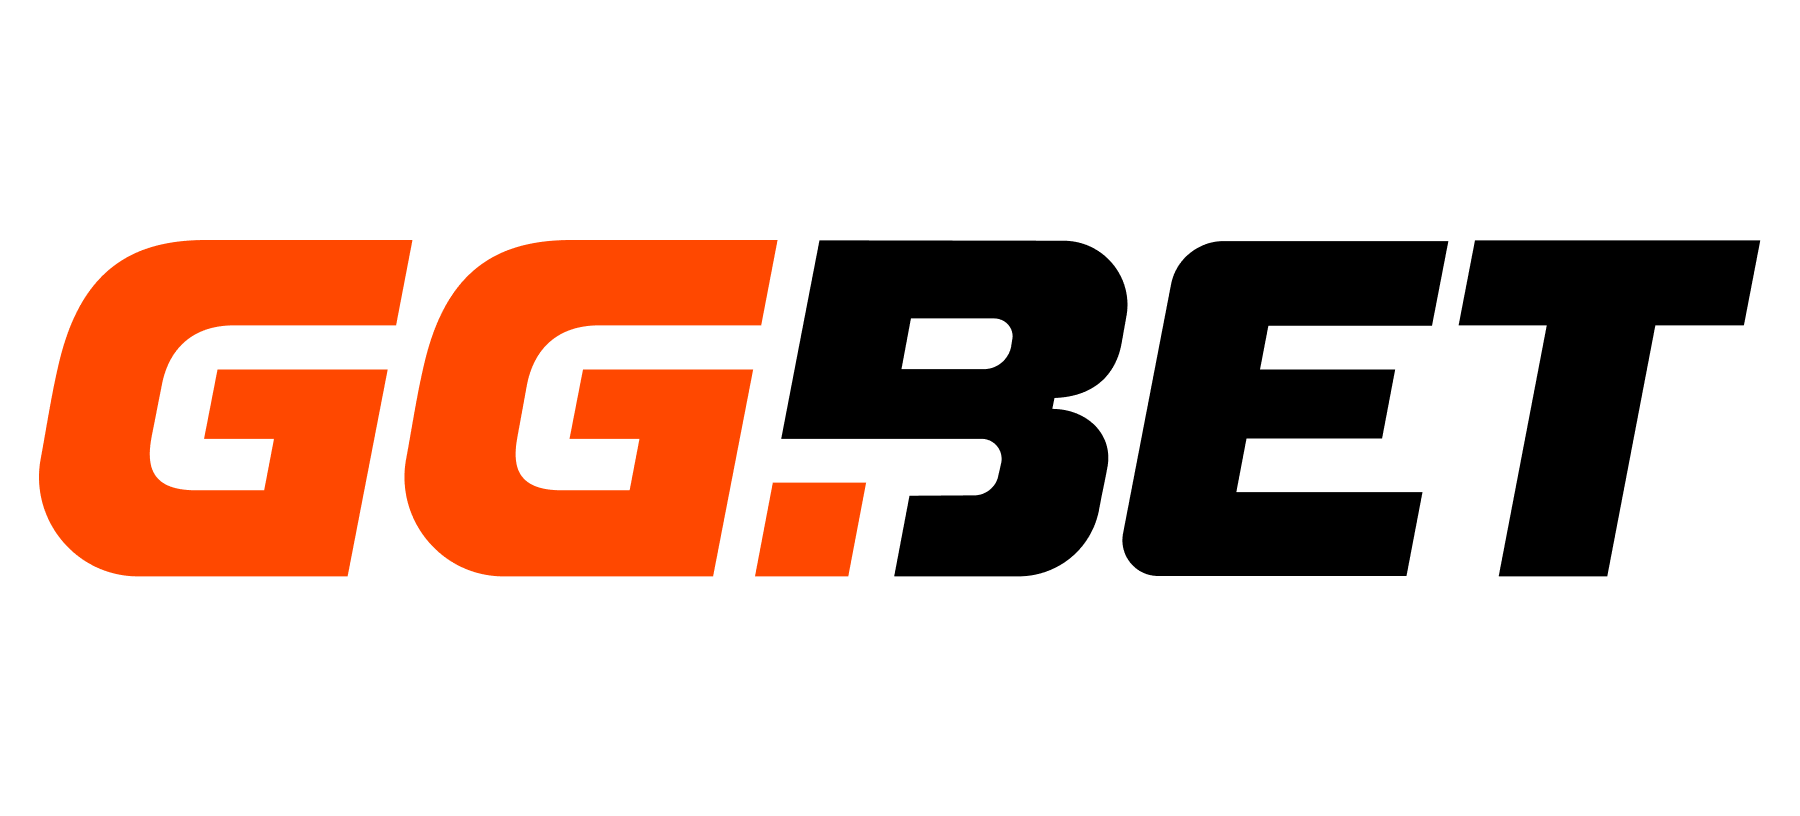 ggbet_logo.png